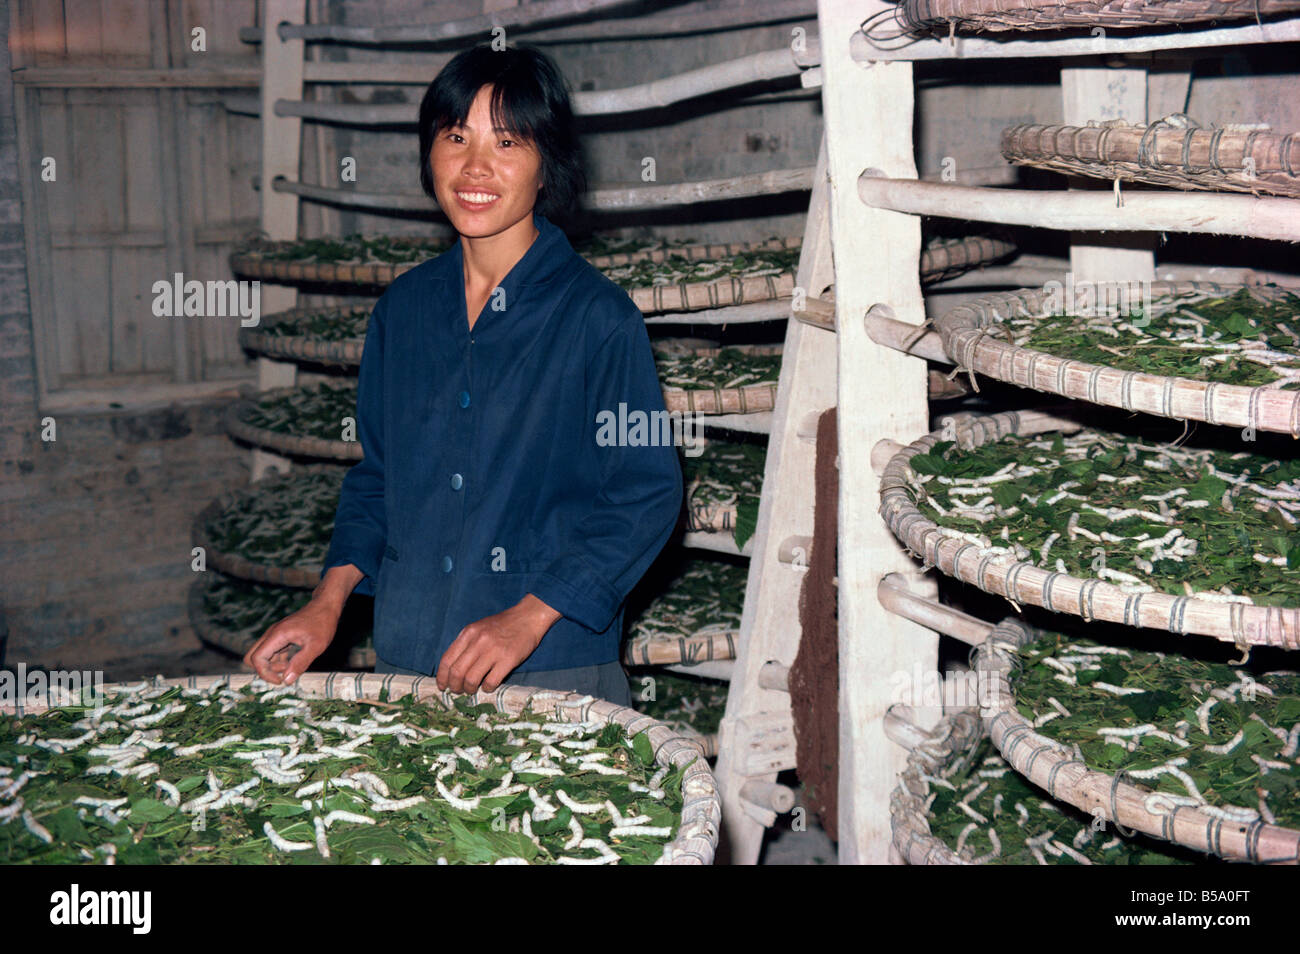 Frau arbeitet in Shamian Gemeinde wächst Seide Würmer China G Corrigan Stockfoto